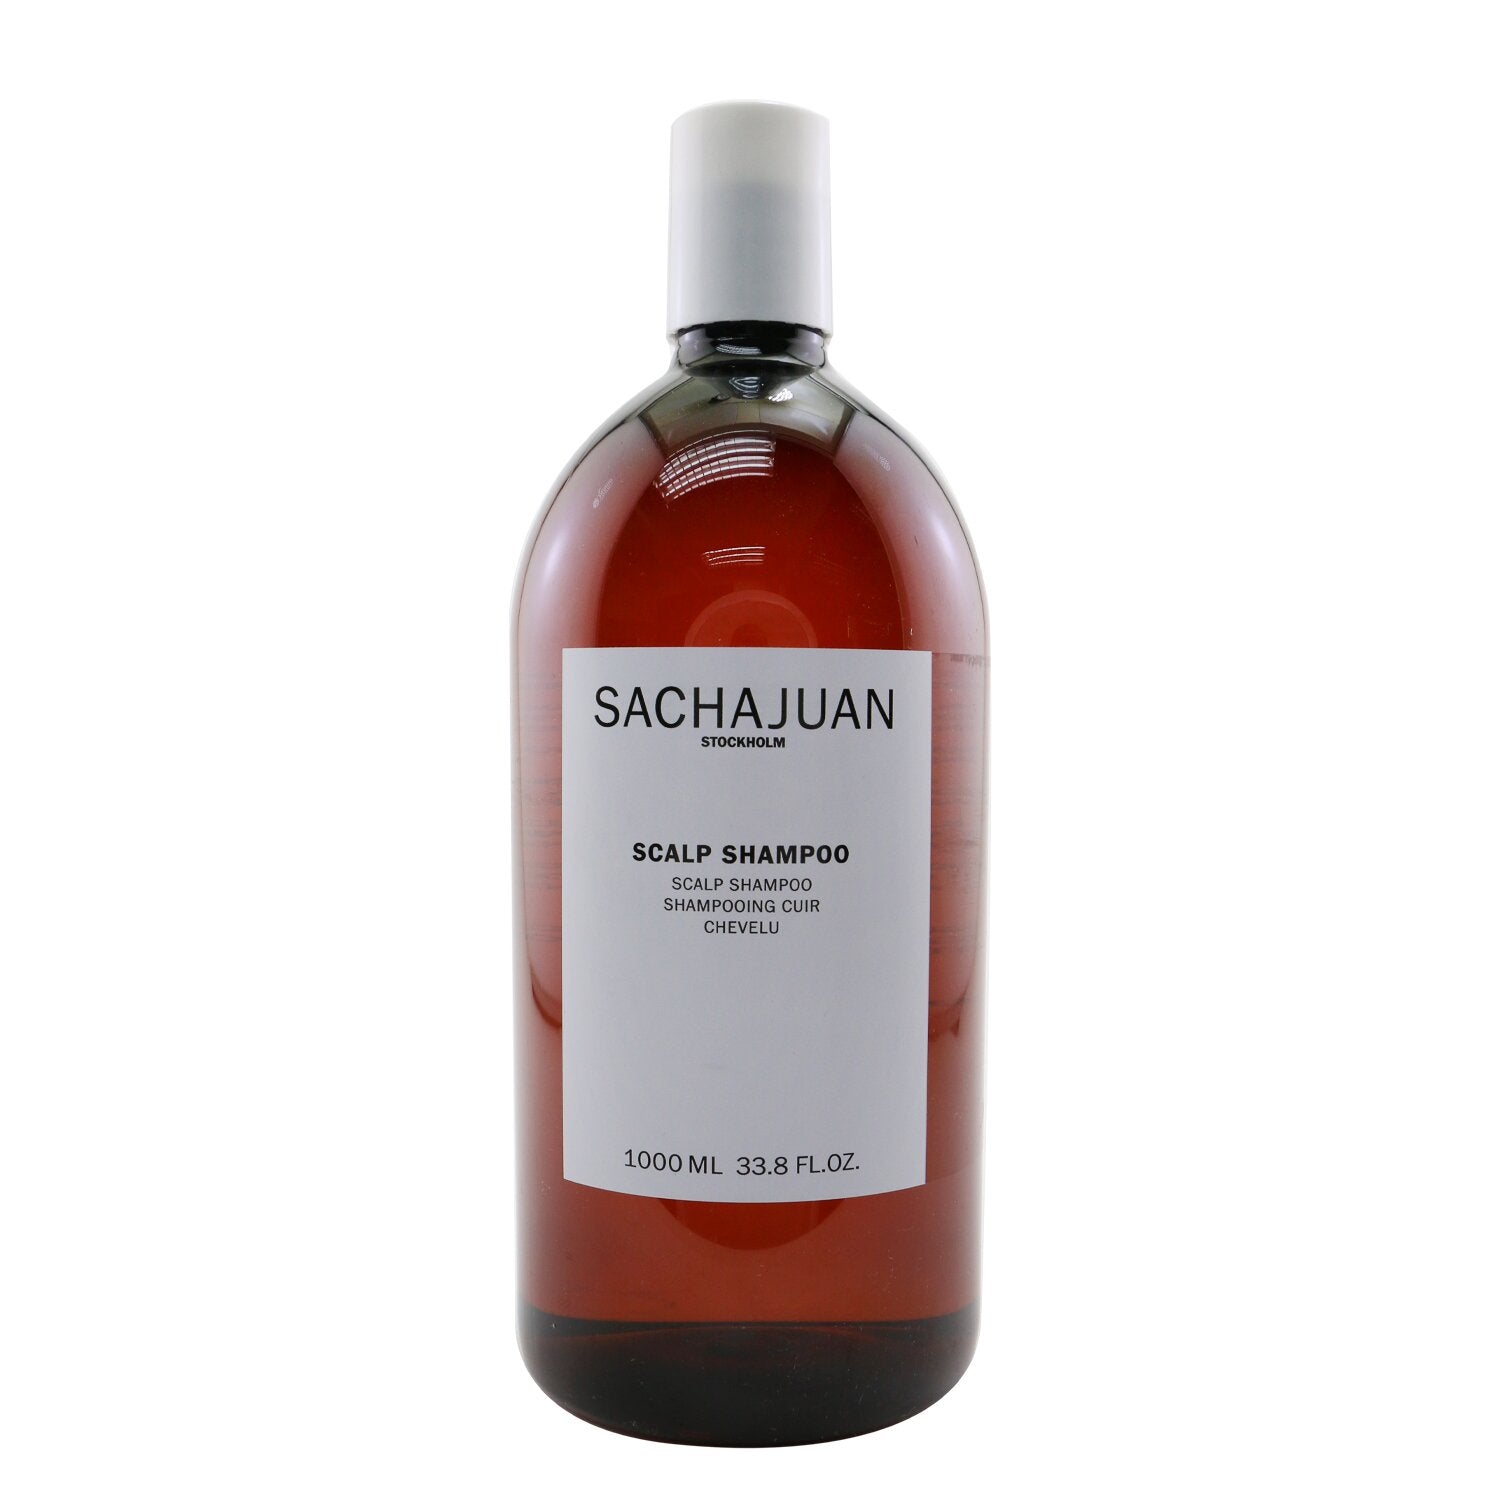 Sachajuan Scalp Shampoo Co. USA